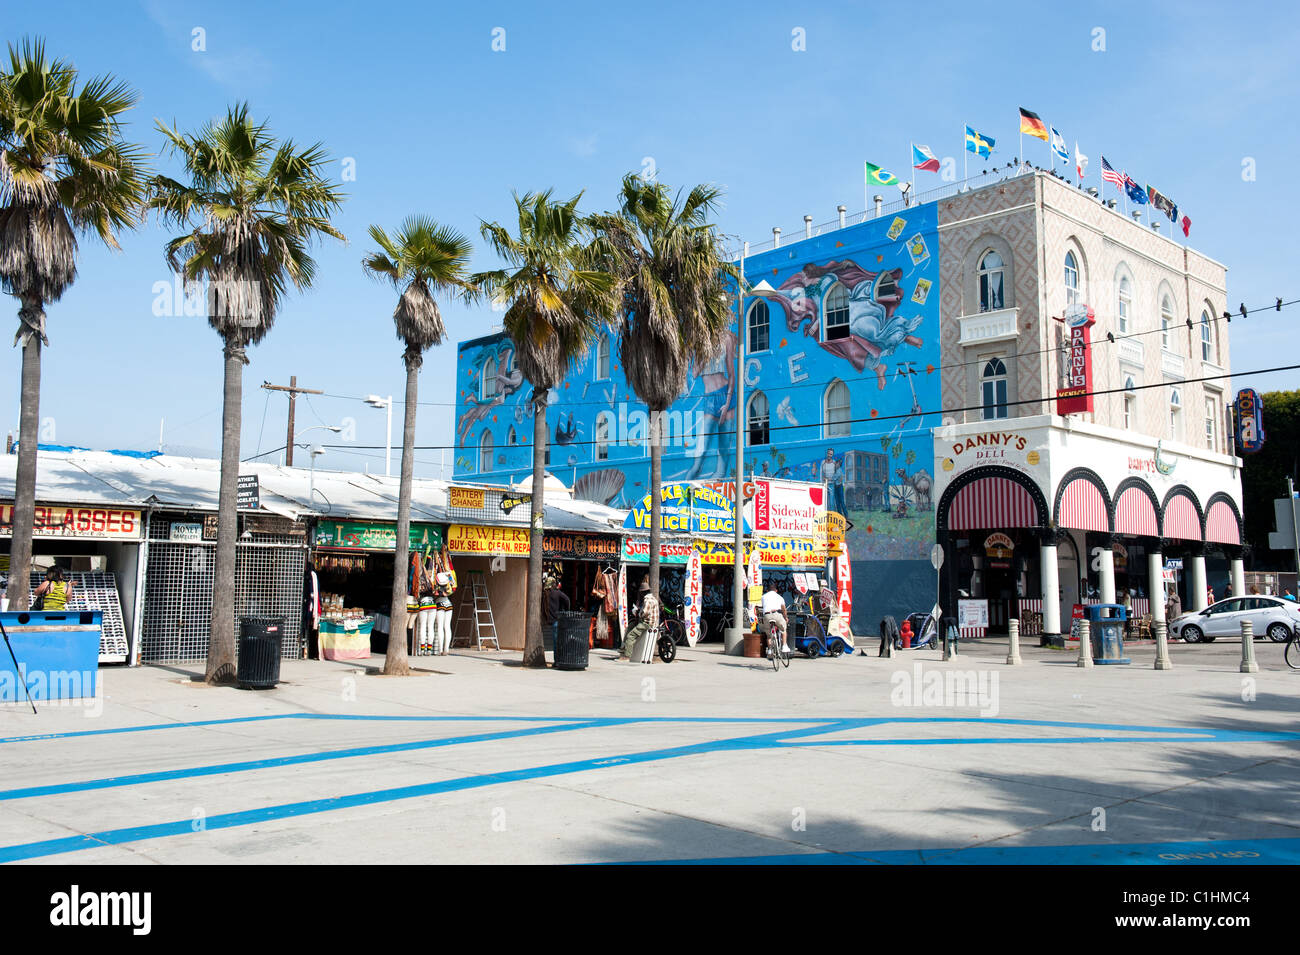 Famosa in tutto il mondo Venice Beach Boardwalk ospita quasi due chilometri di negozi, ristoranti e venditori ambulanti Foto Stock